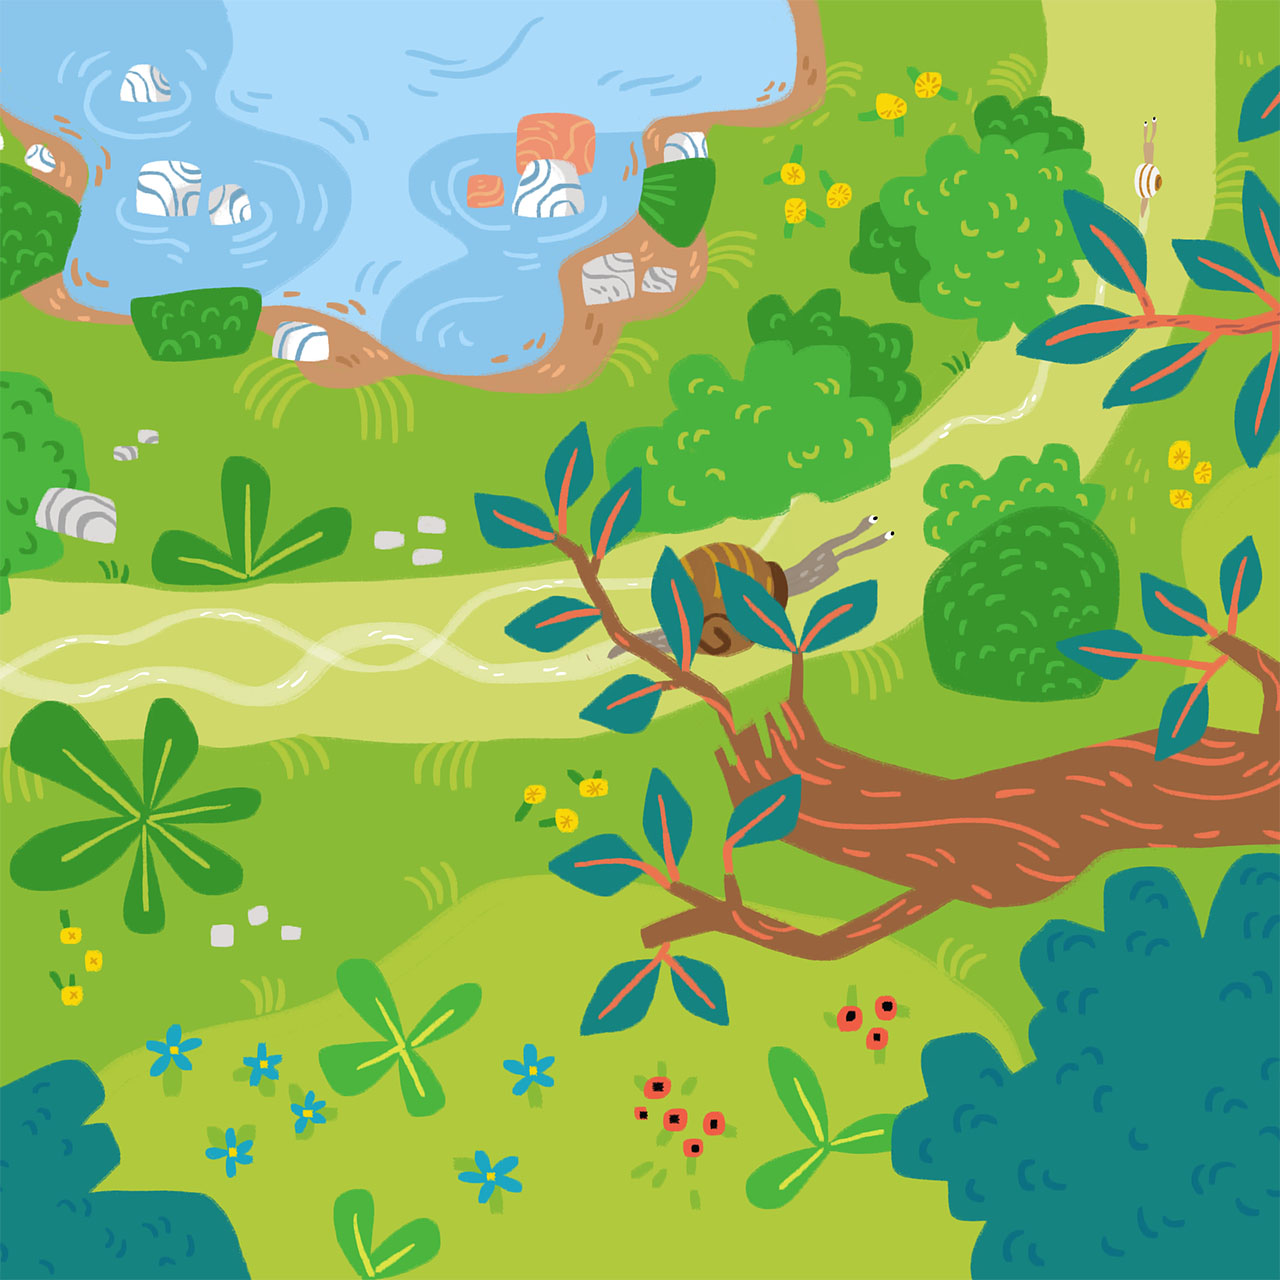 illustration en aplat numérique dans des couleurs vive montrant une scène dans une clairière vue de haut avec une mare, des buissons, et des arbres entre lesquels on aperçoit des escargots qui font la course